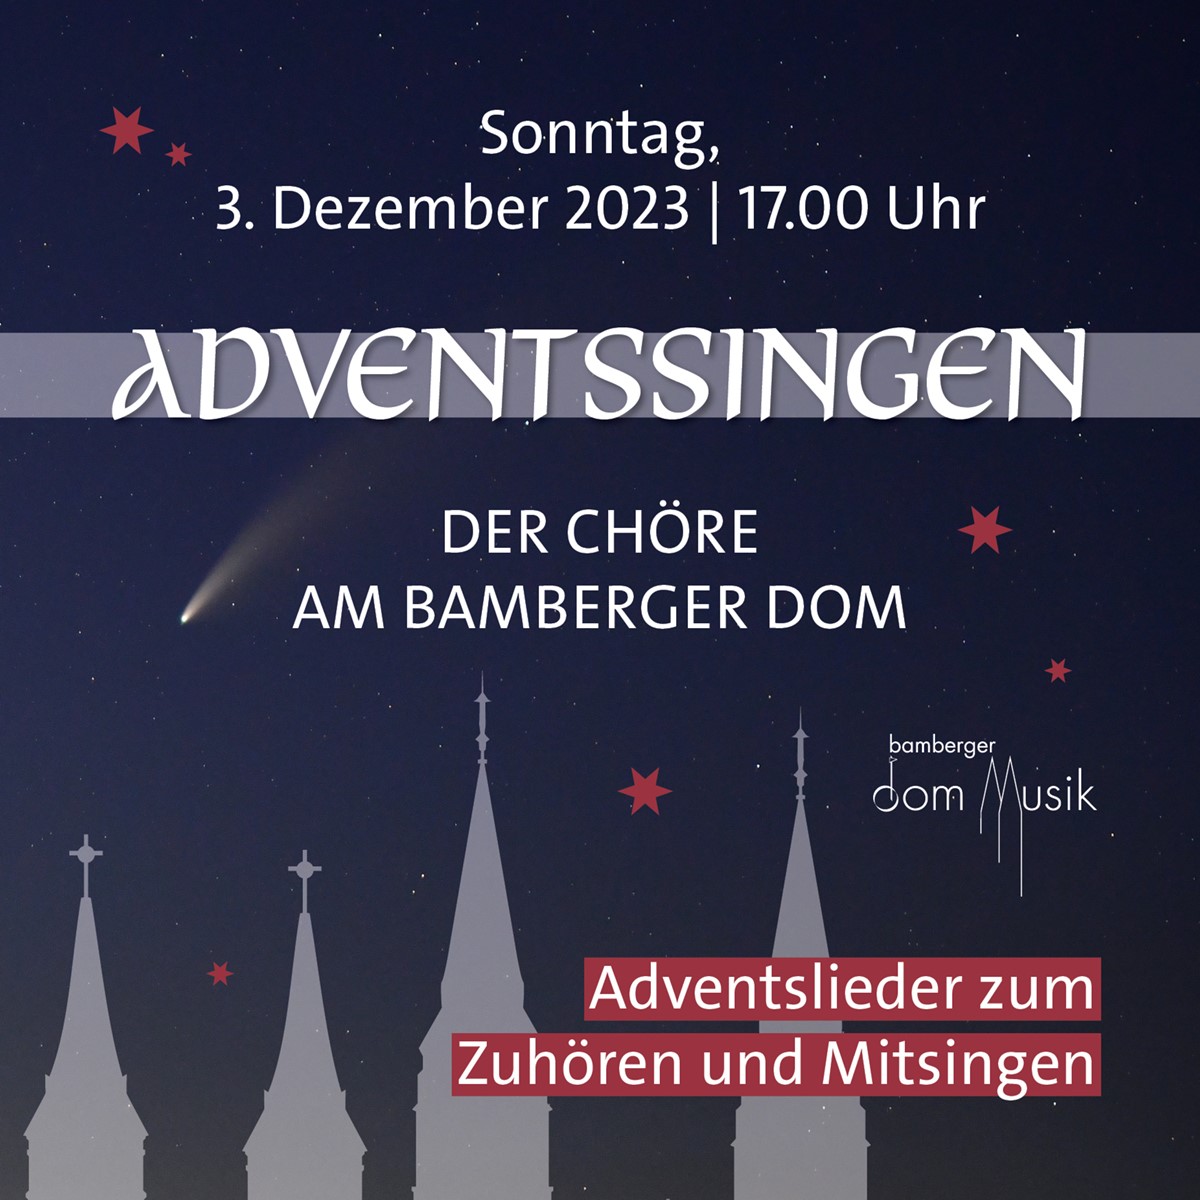 Am Ersten Advent wird traditionell zum Adventssingen im Bamberger Dom eingeladen.